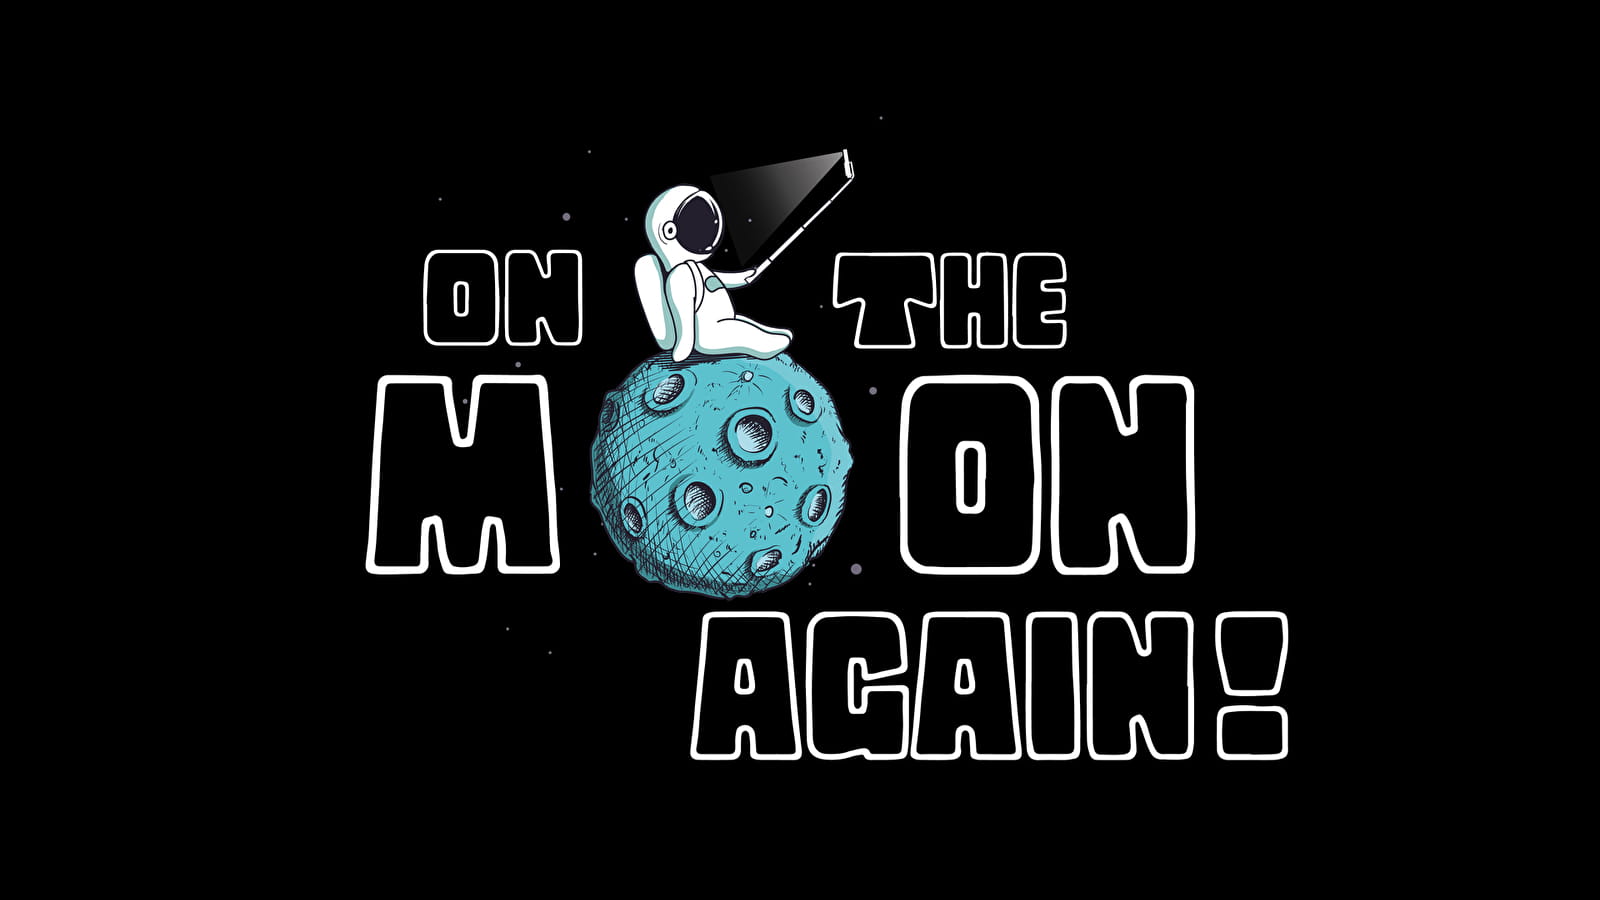 Opnieuw op de maan (astronomische observatie van de maan)